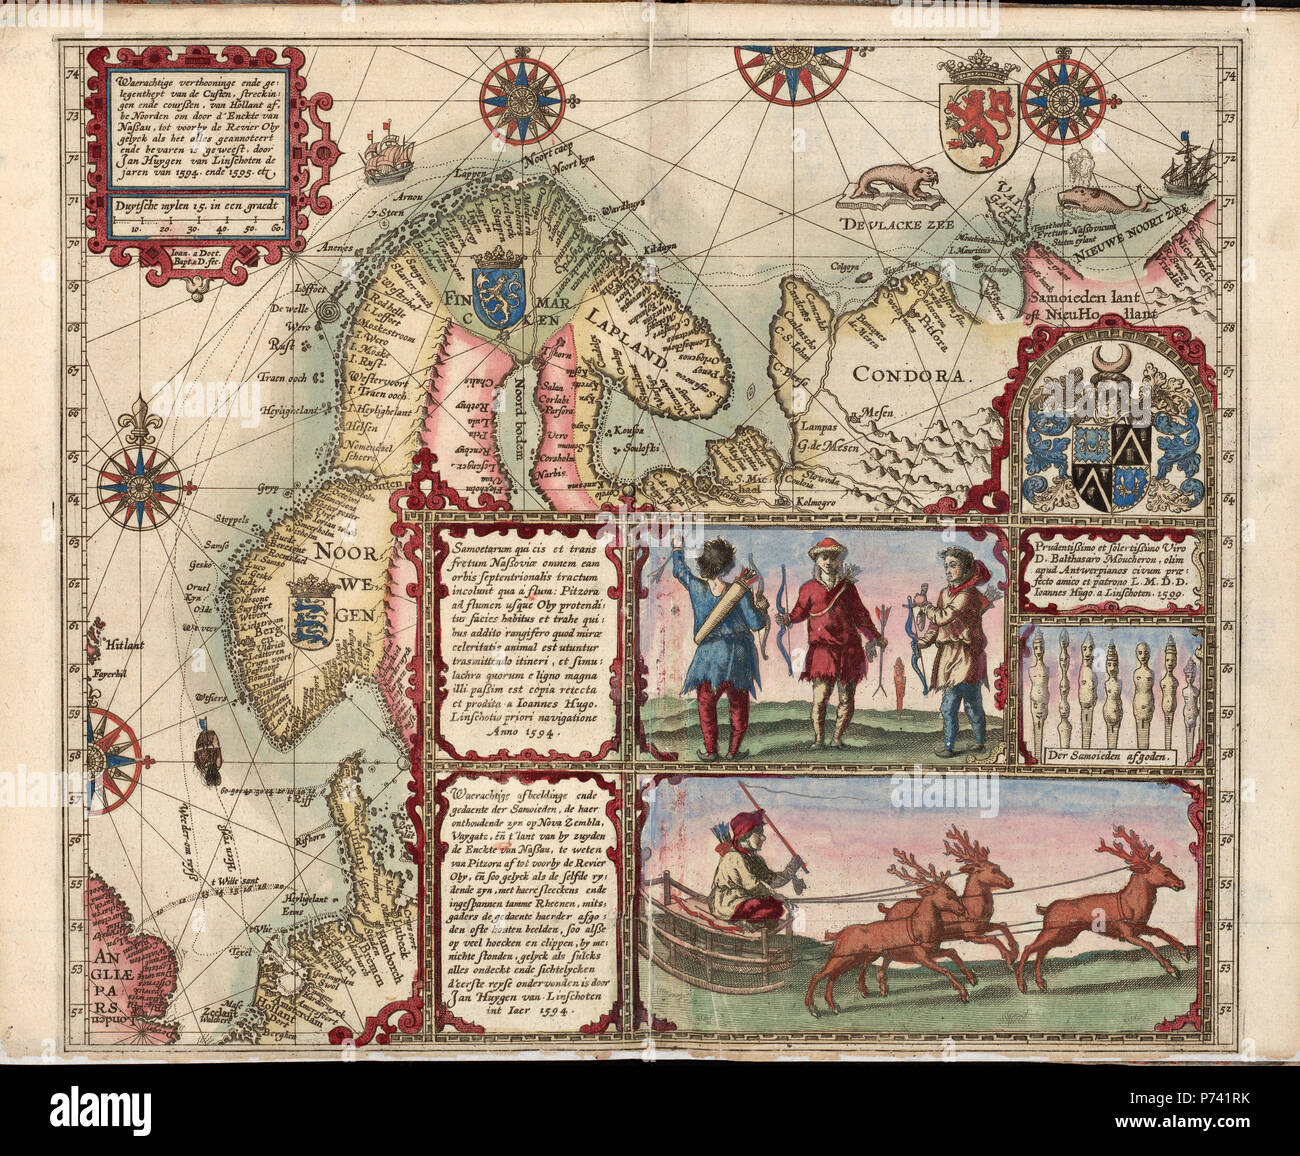 Linschotens nordenkart, 1601 - Cartographer Jan Huygen van Linschoten Banque D'Images